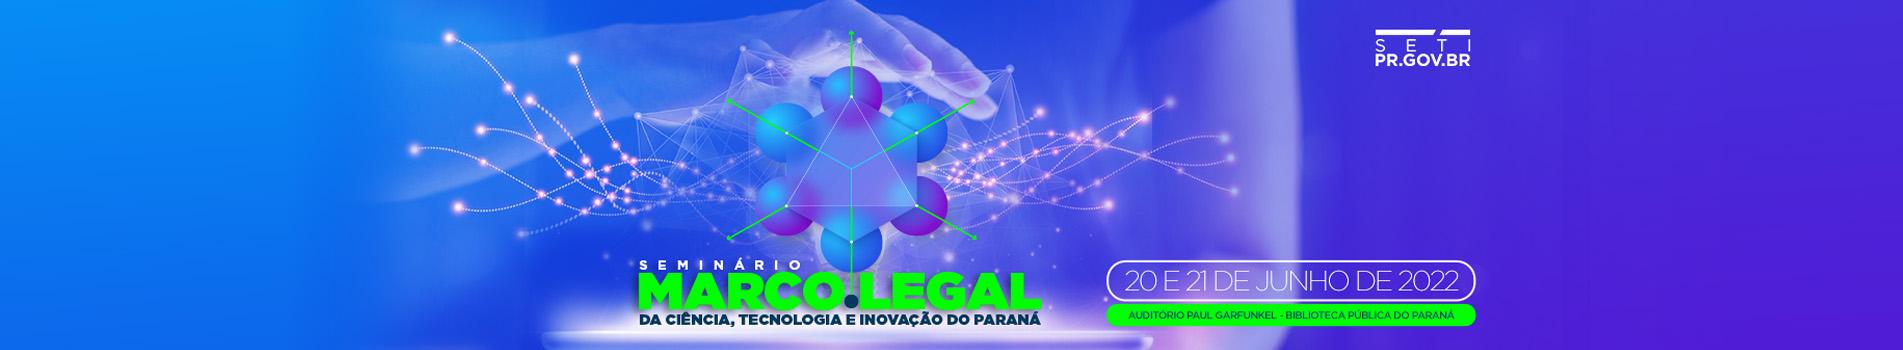 Seminário sobre o Marco Legal da Ciência, Tecnologia e Inovação do Paraná – Desafios e Oportunidades